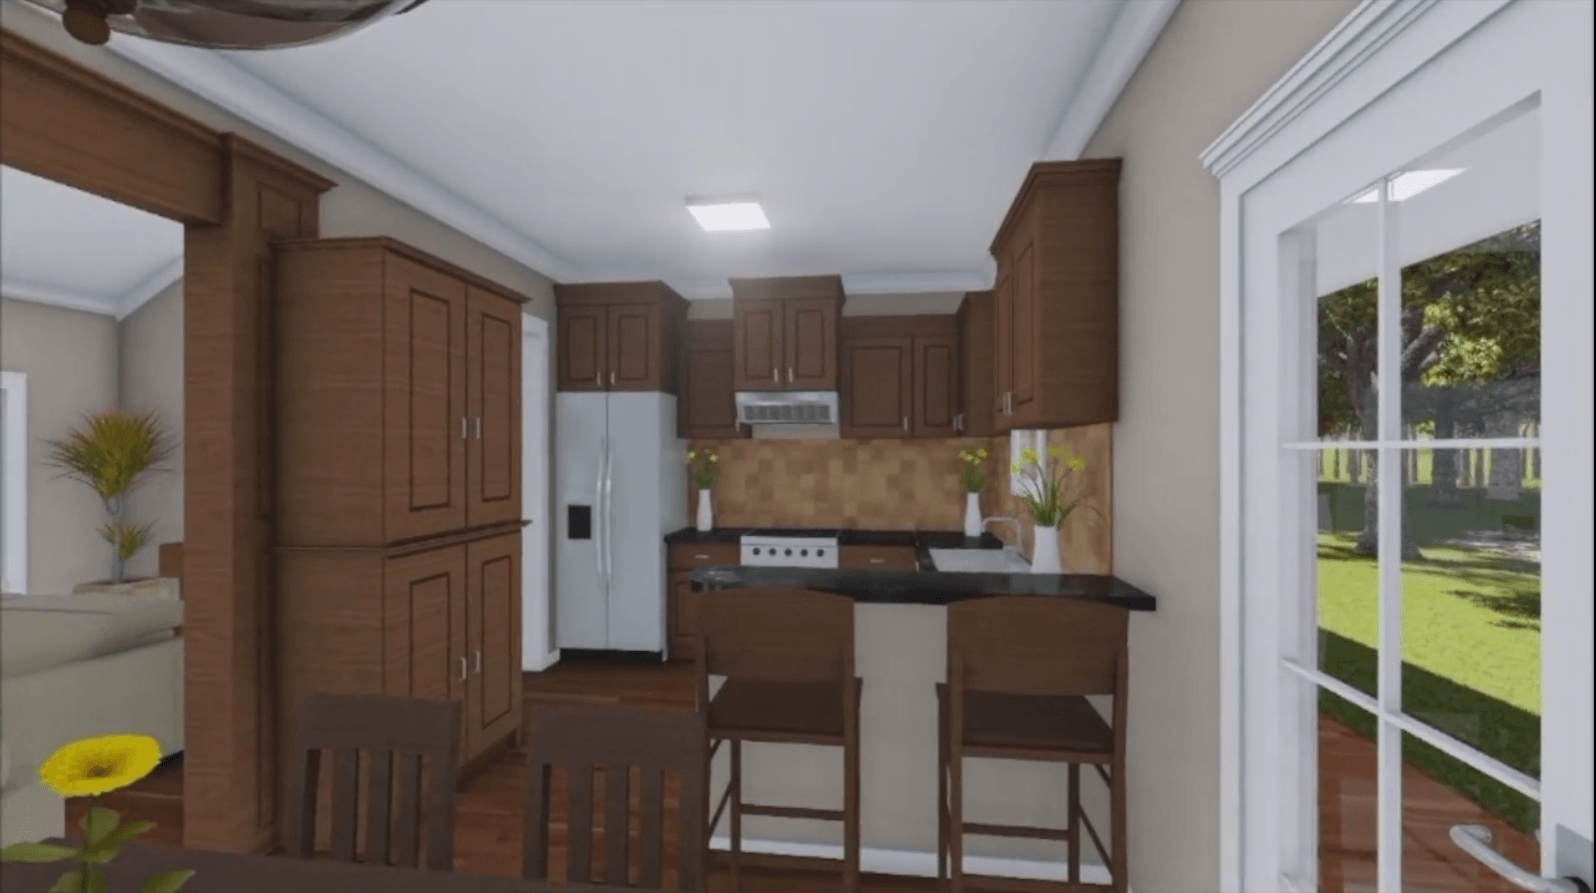 HPG-1509-1 kitchen in homeplans